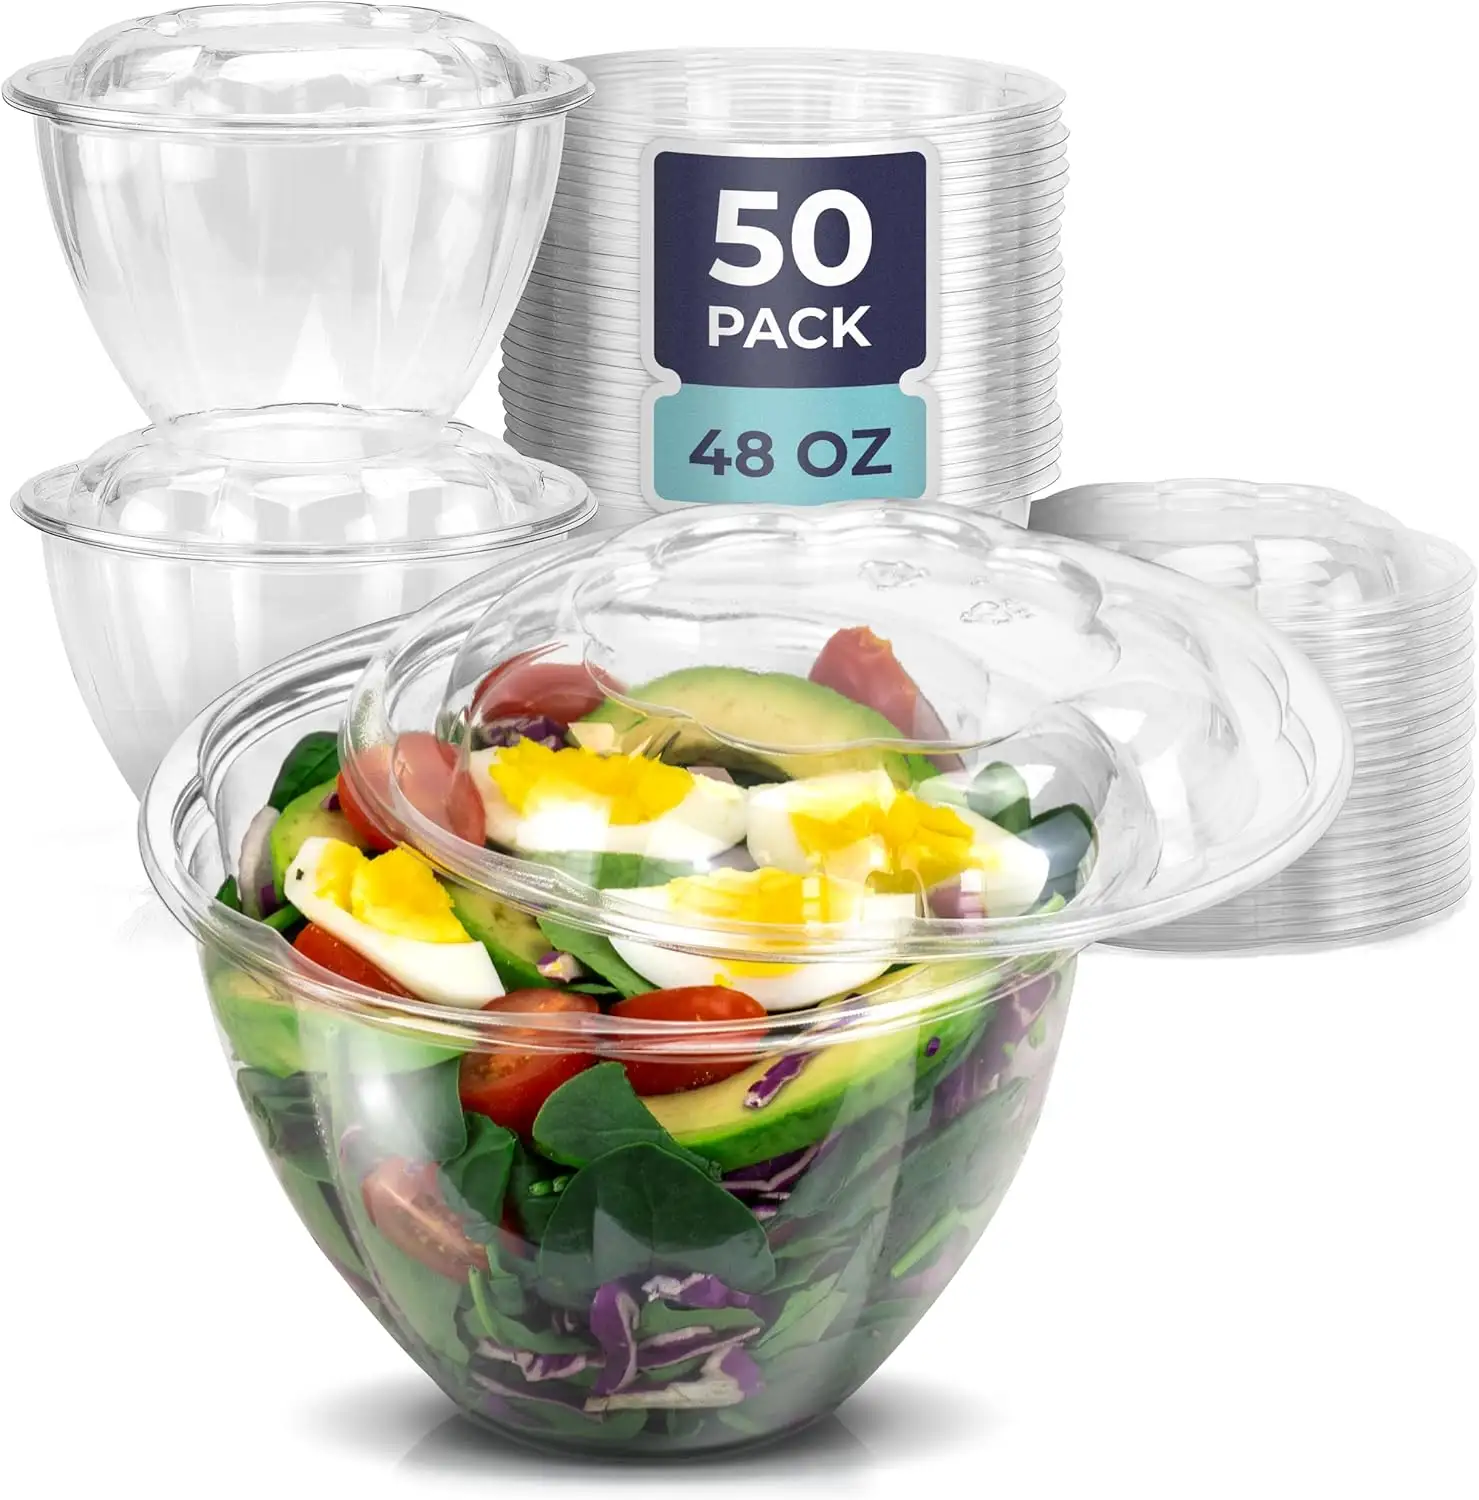 Tigelas de plástico para salada PET recicláveis, resistentes à água, ultra transparentes e duráveis de alta qualidade, 48 onças, com tampa hermética, para ir com as saladas